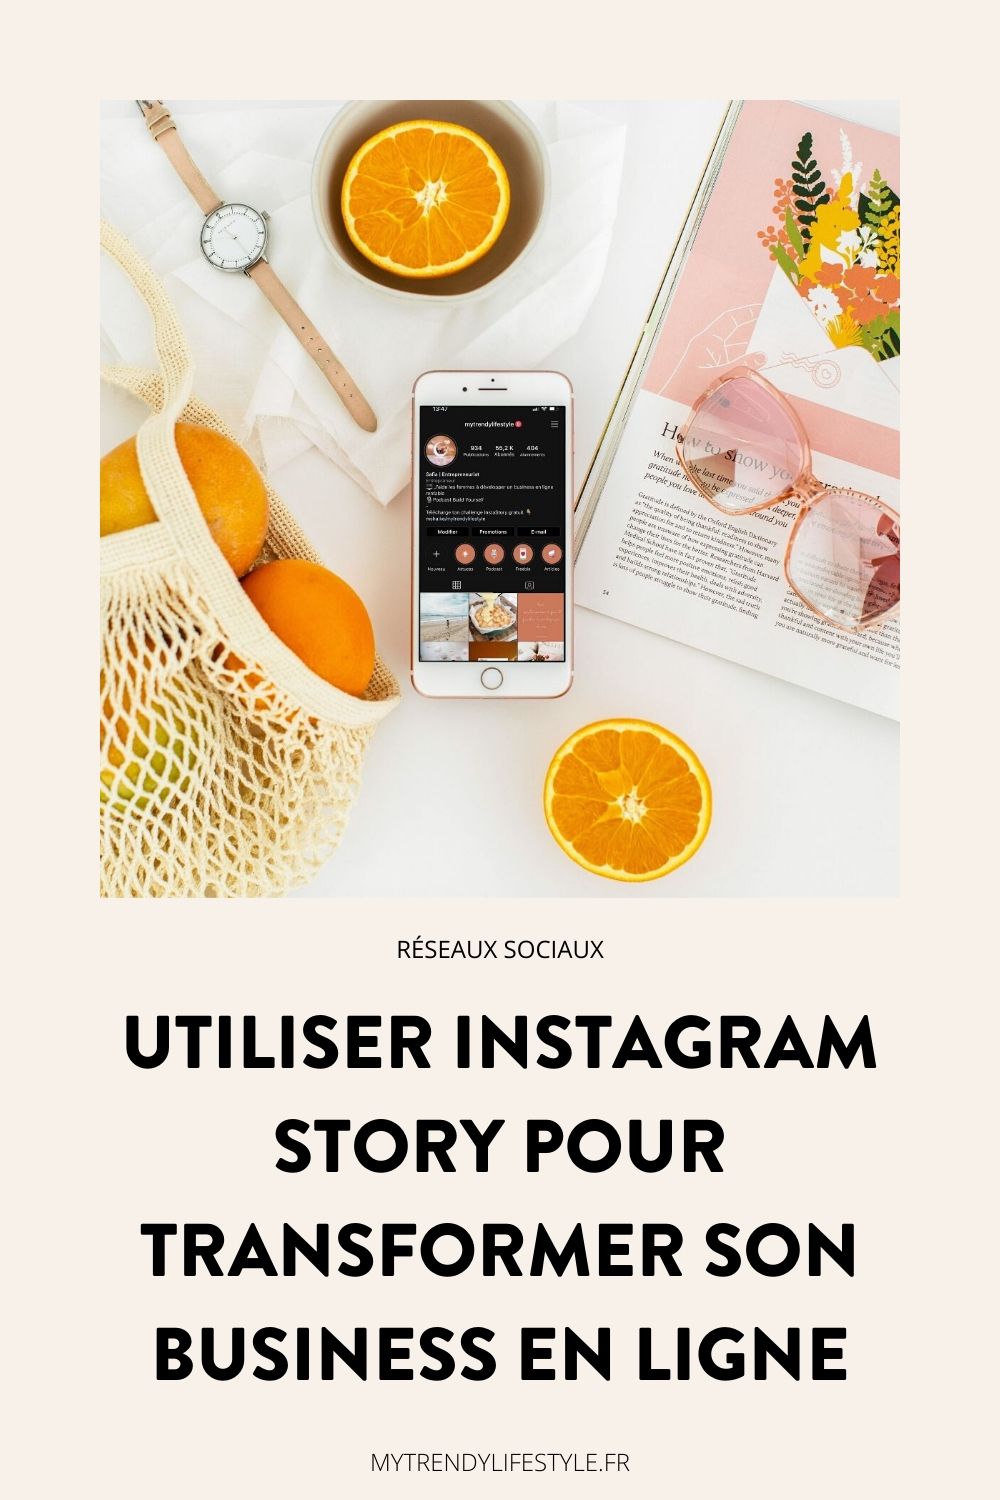 les stories Instagram sont plus direct, plus réelles et plus engageantes qu’une simple photo poster sur le feed. Une story est un contenu vivant, un contenu instantané et plus personnel. Je suis convaincue qu’Instagram Story est un élément indispensable lorsque l’on veut booster son business grâce aux réseaux sociaux et je vous explique aujourd’hui pourquoi.